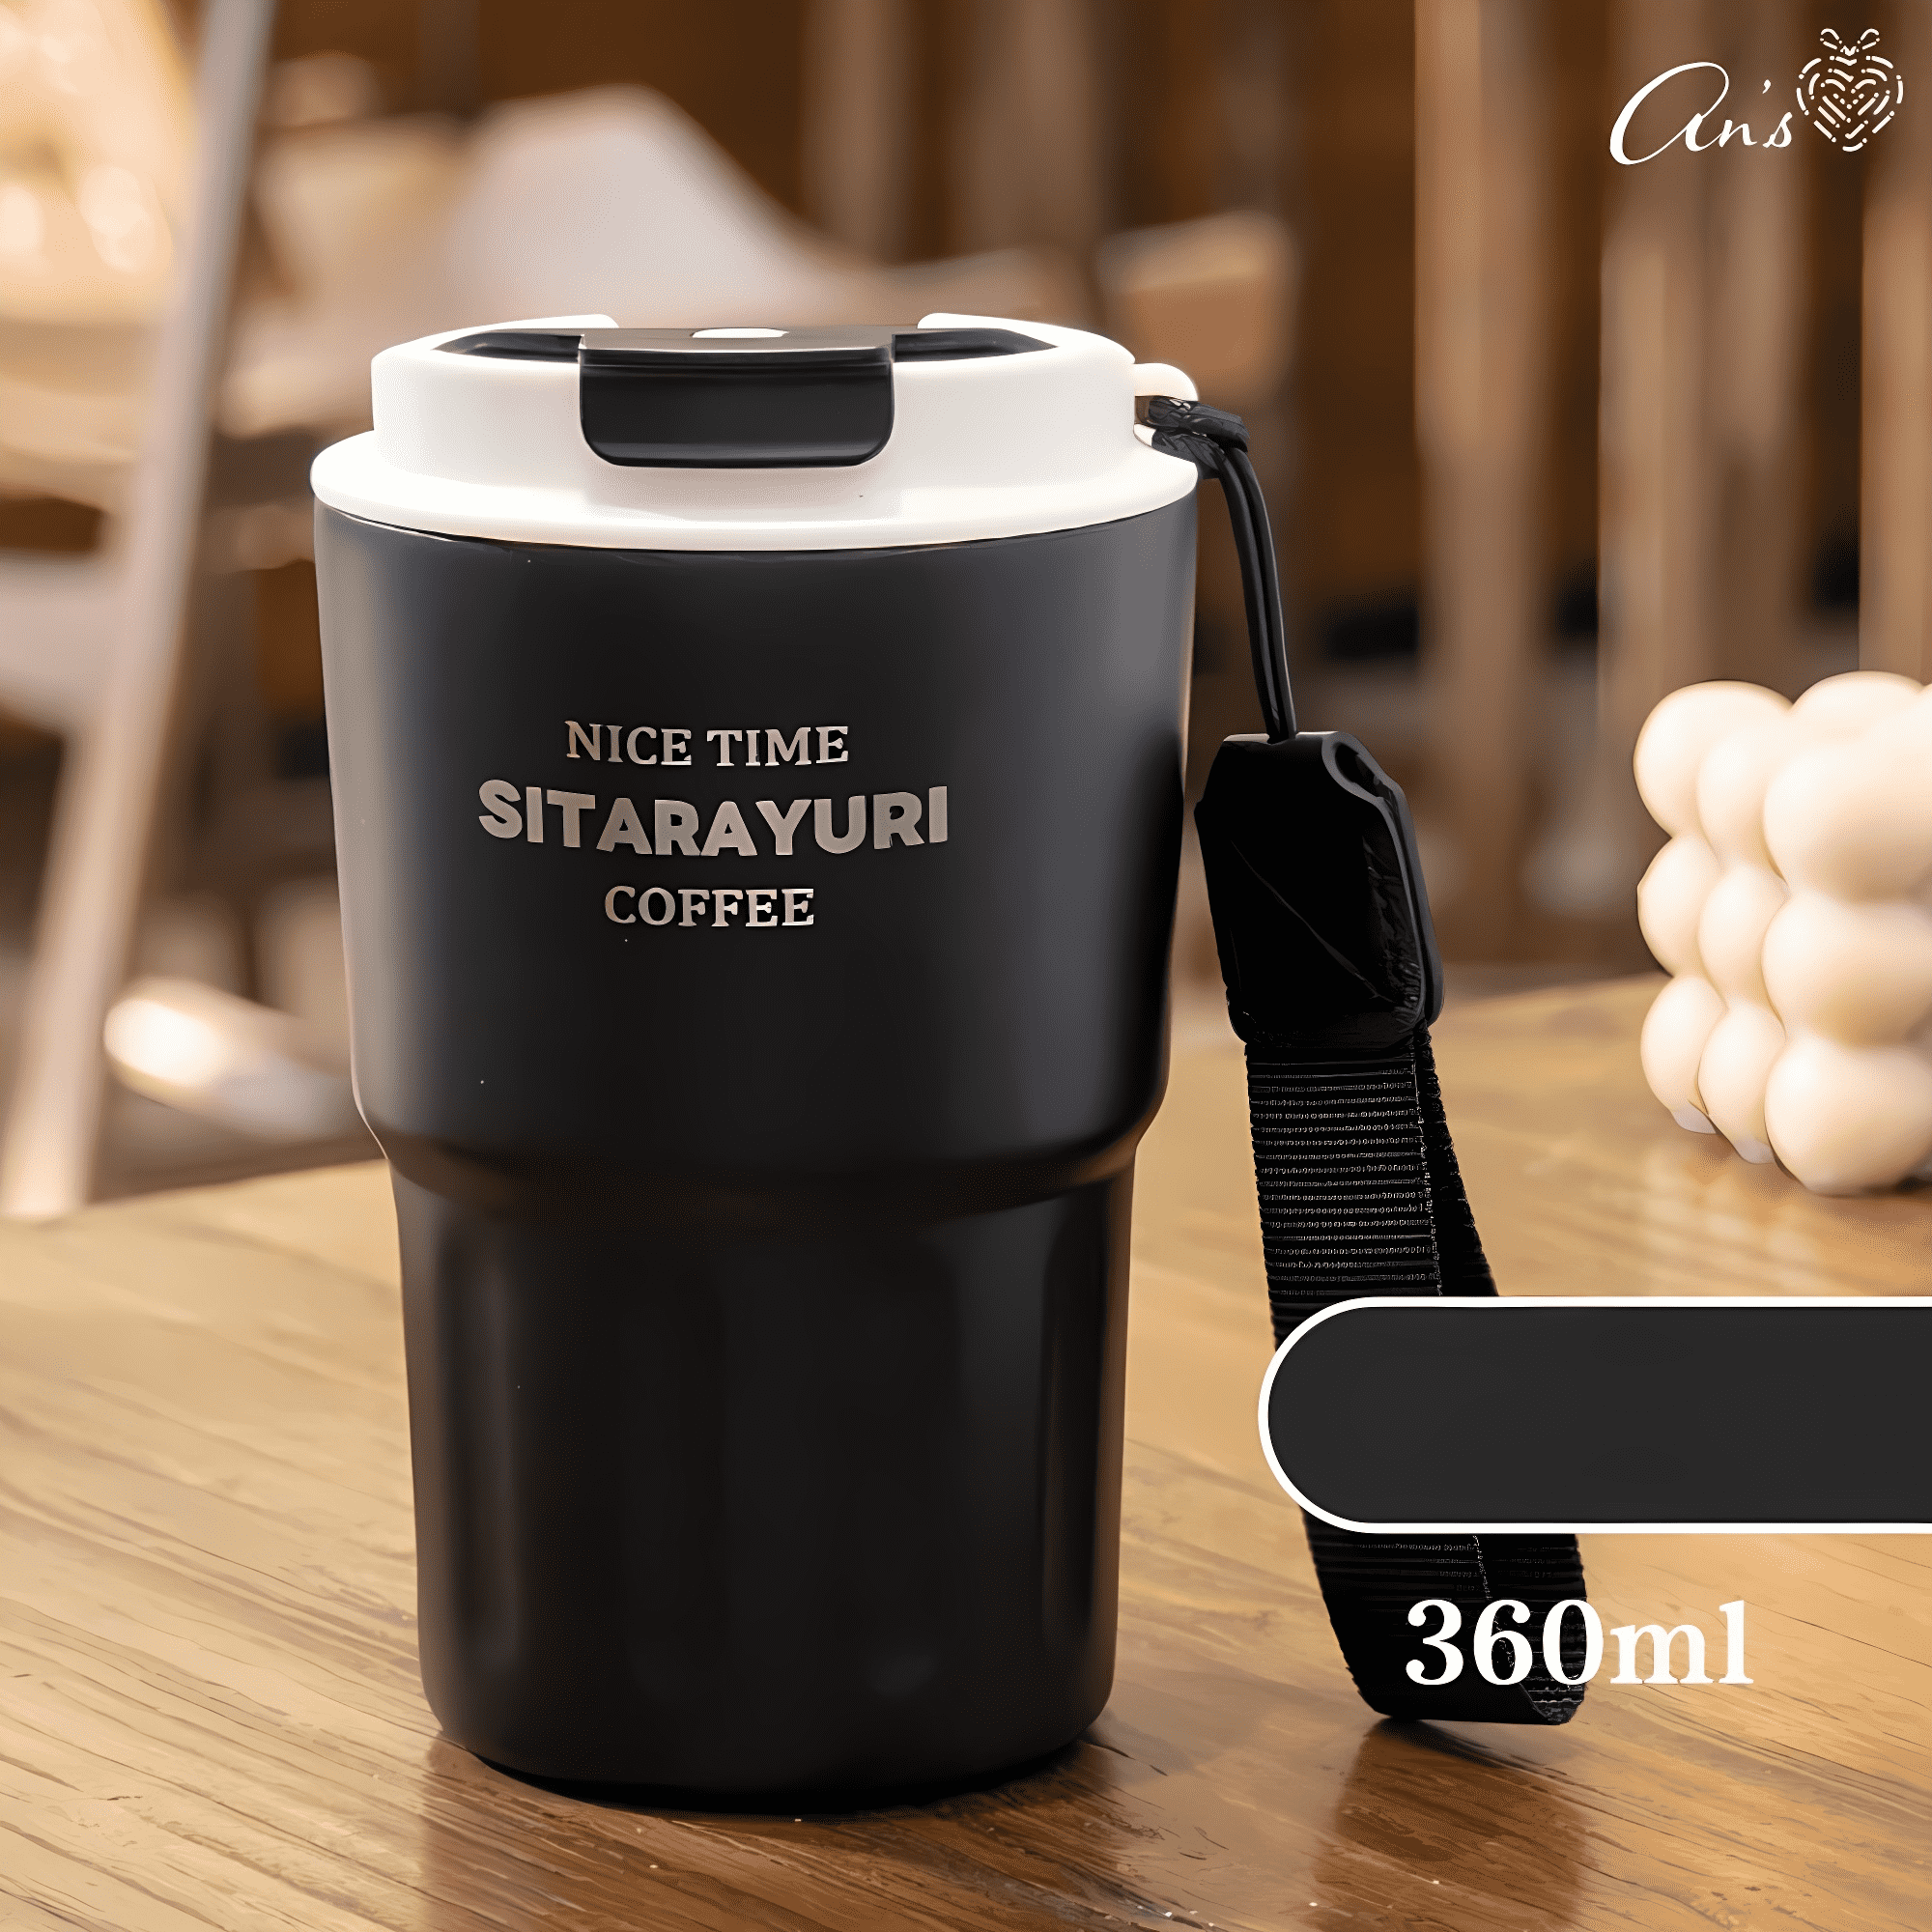  Ly giữ nhiệt đựng cà phê trà sữa - BGN44 